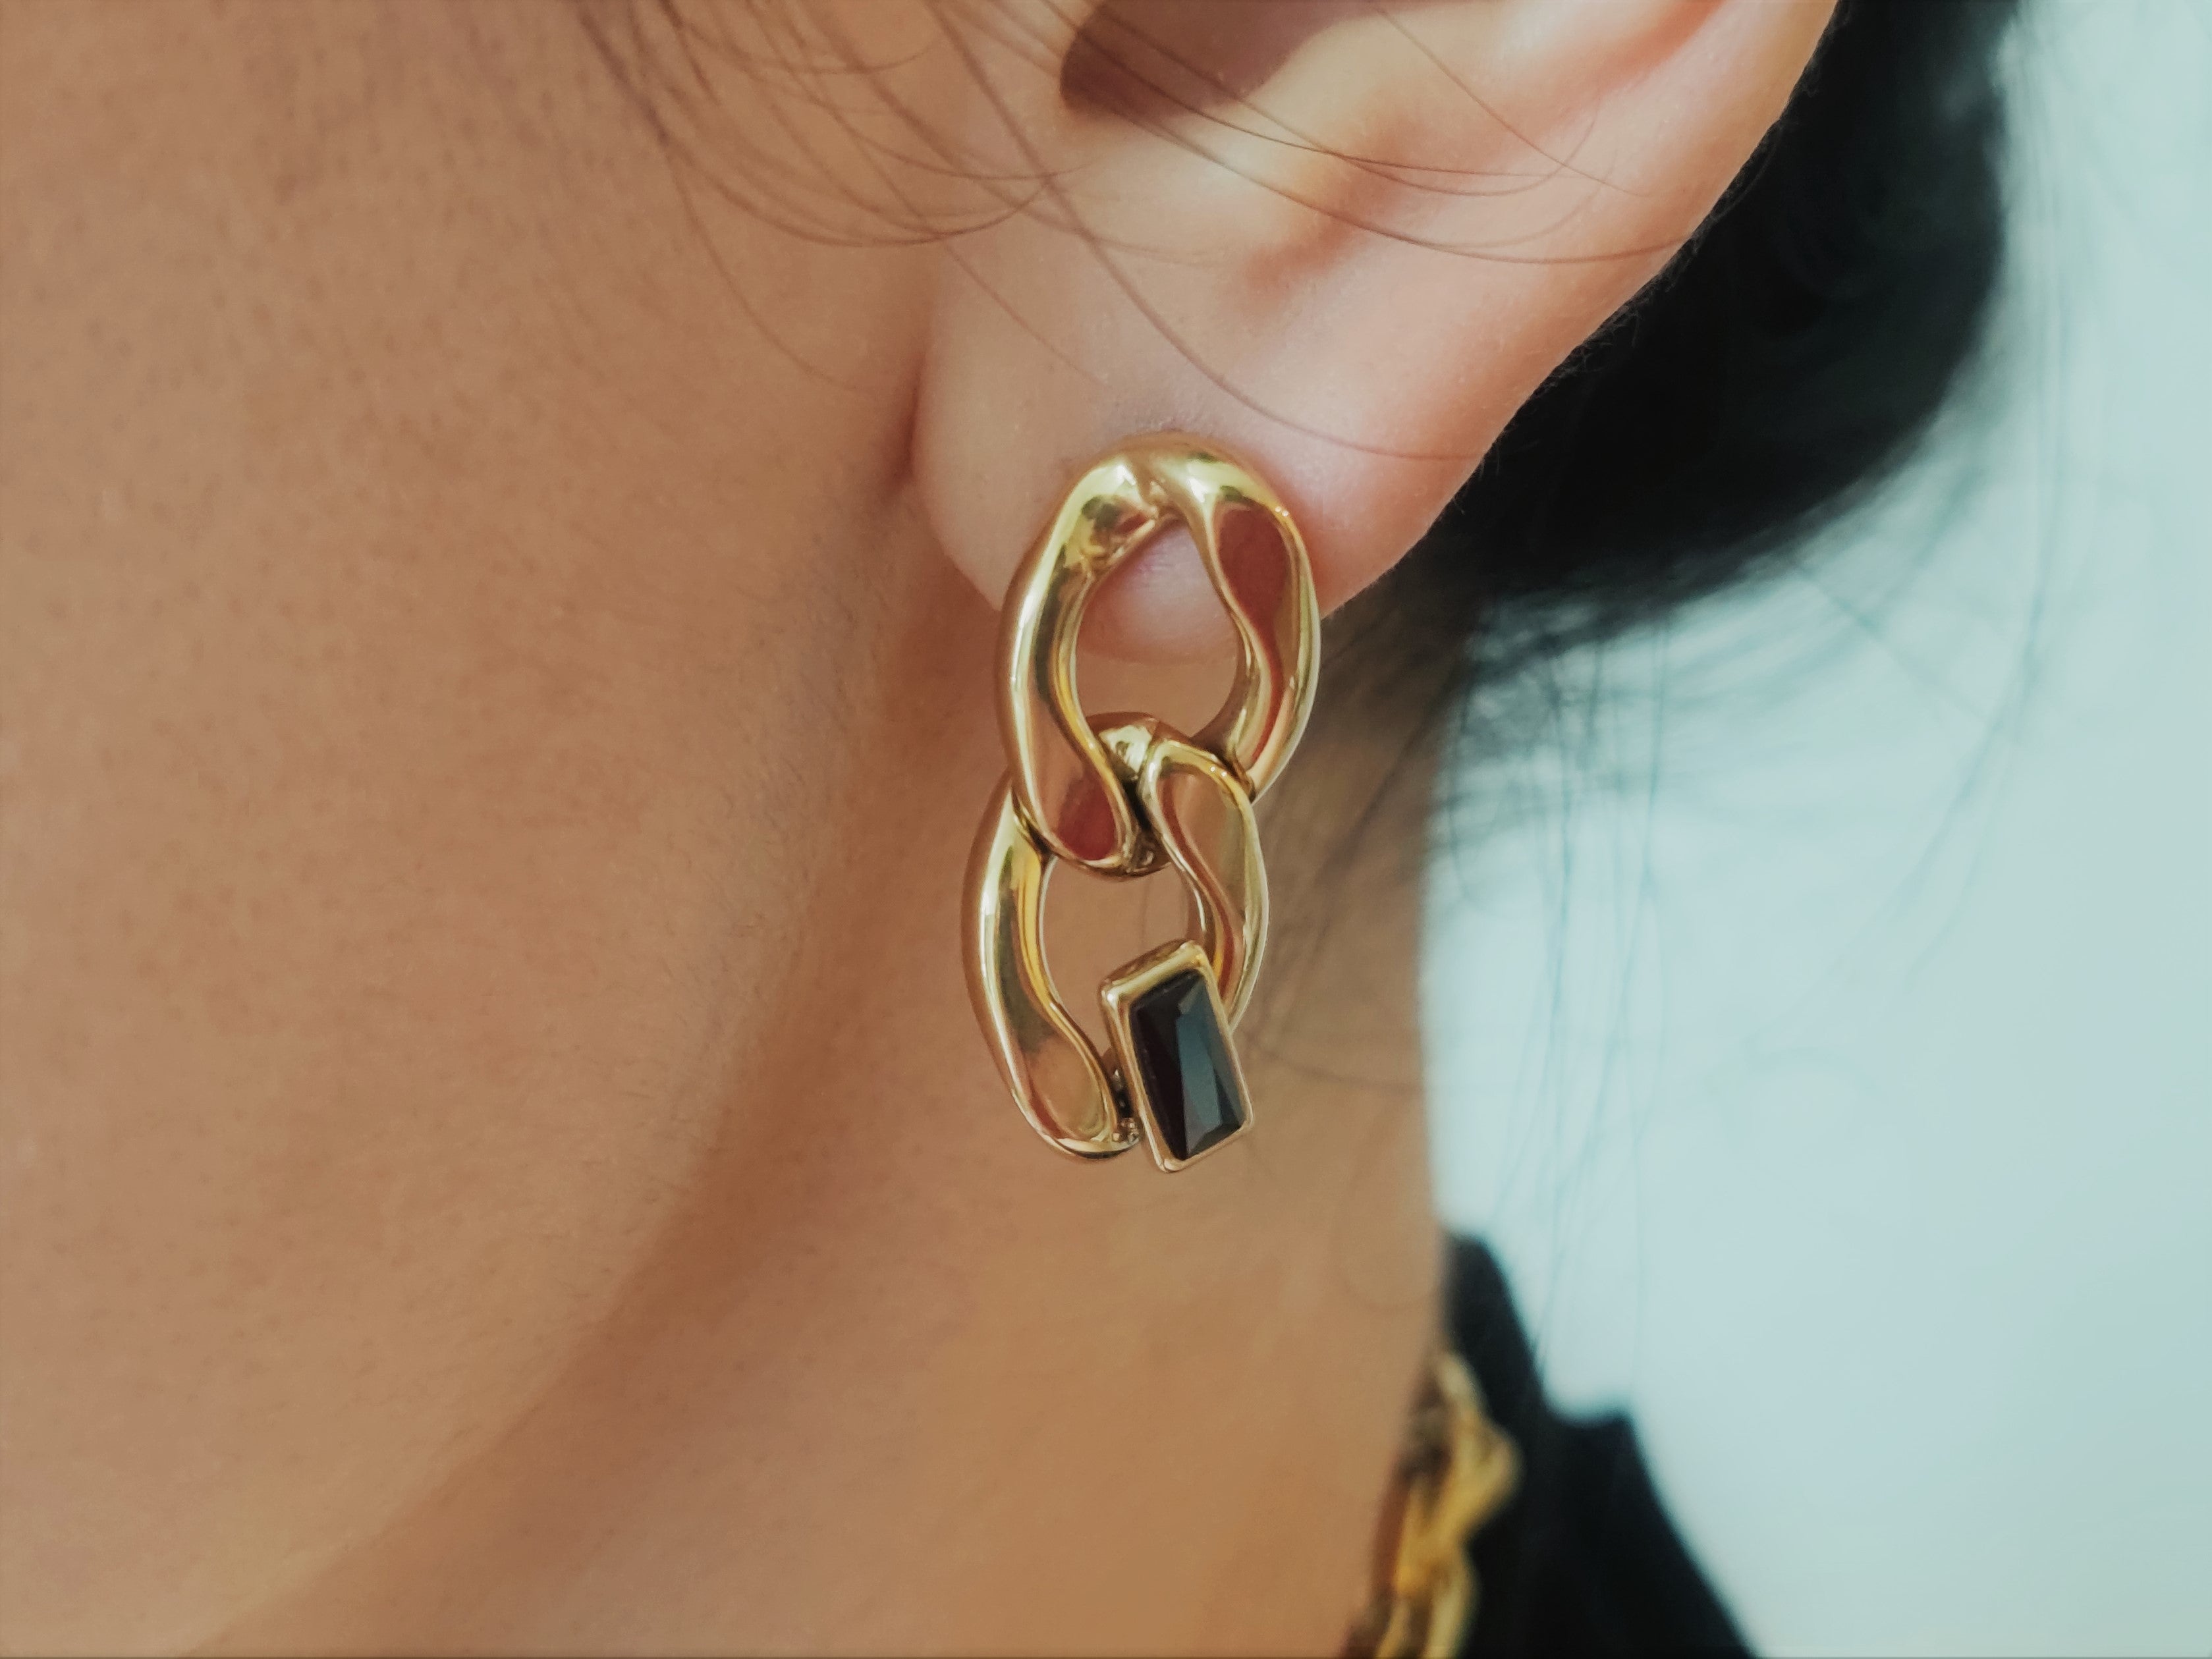 Breath earrings (Gold)